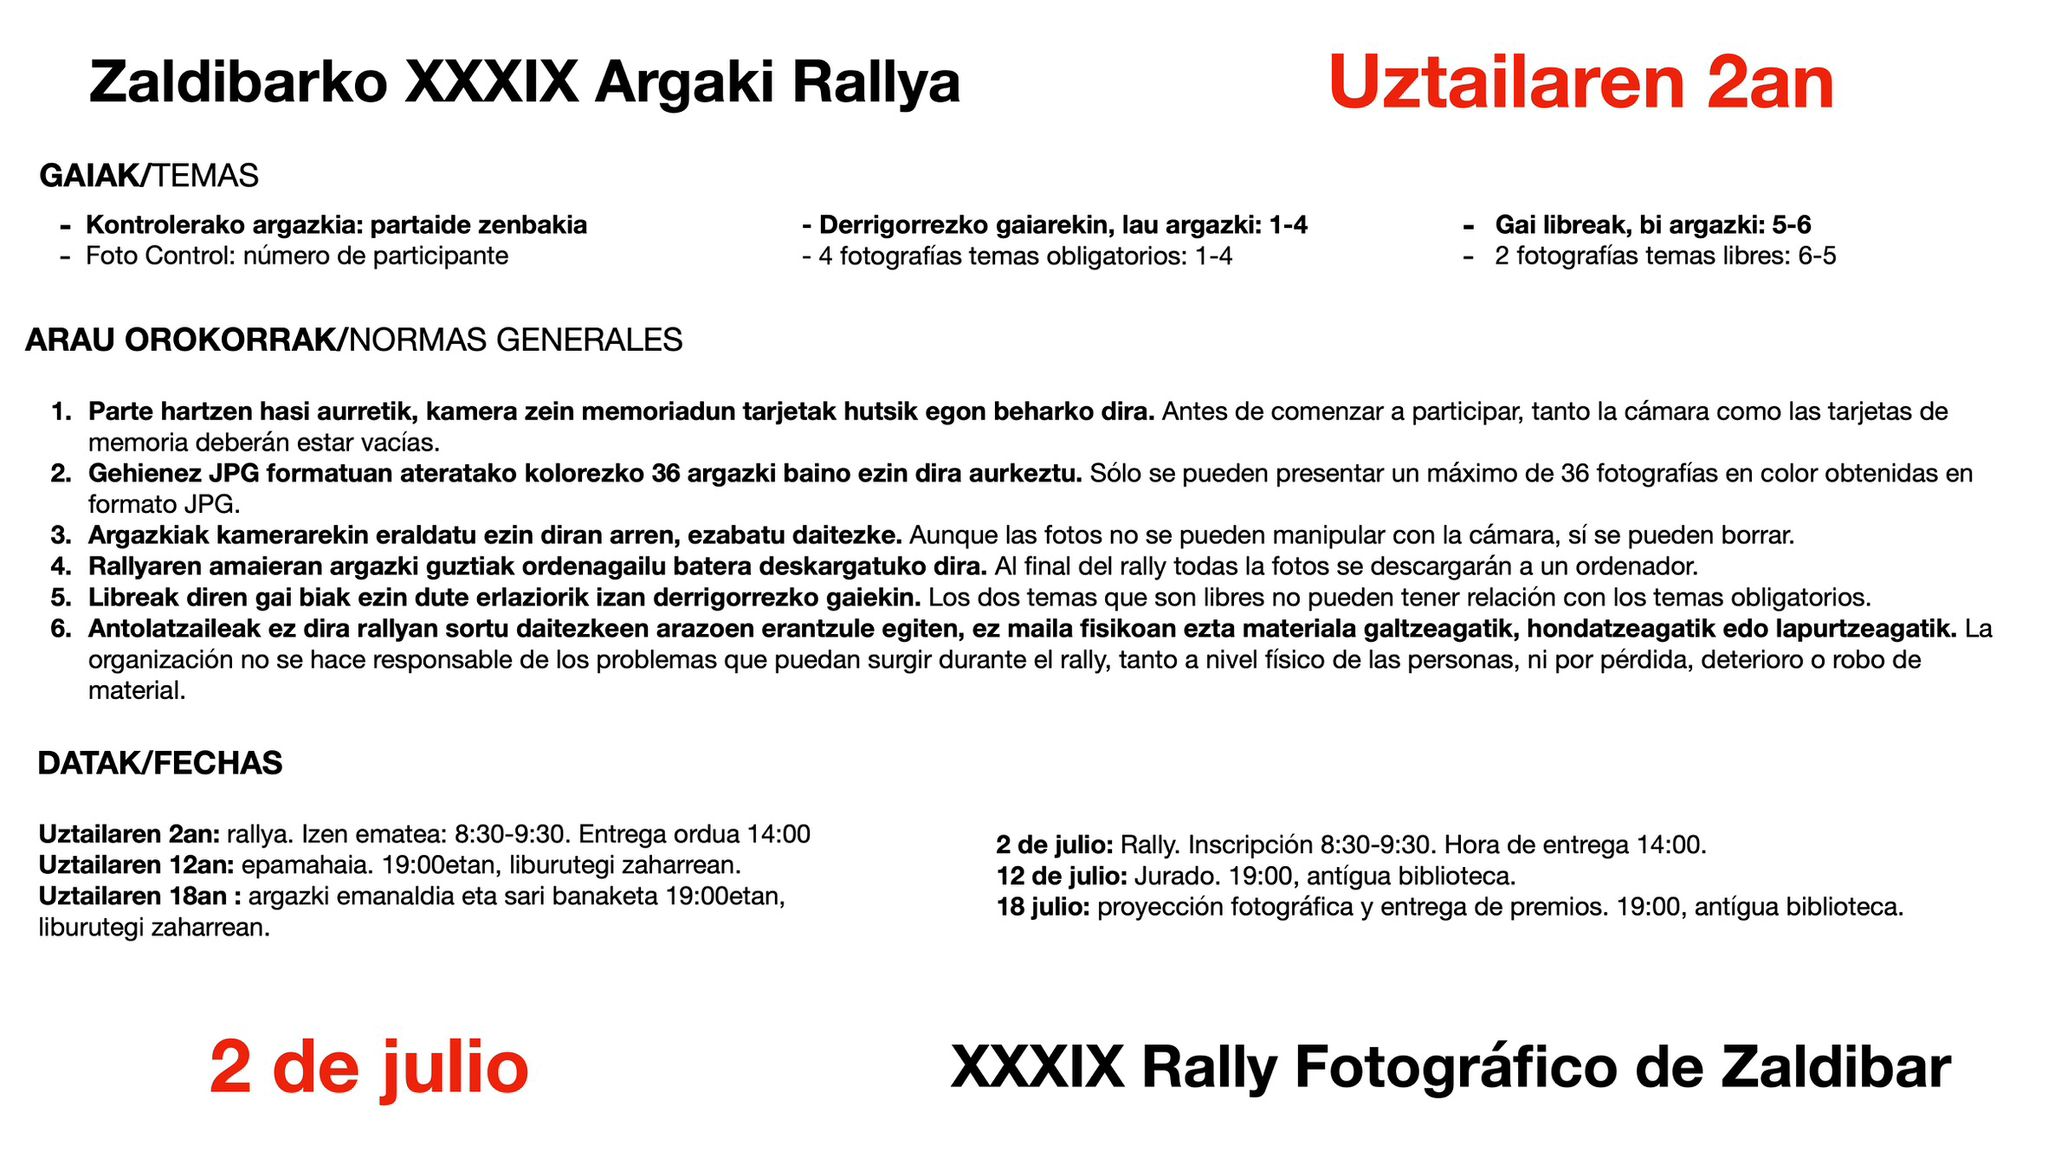 Ven a participar el el XXXIX rraly fotográfico de Zaldibar el 2 de julio de 2023, conoce las bases.